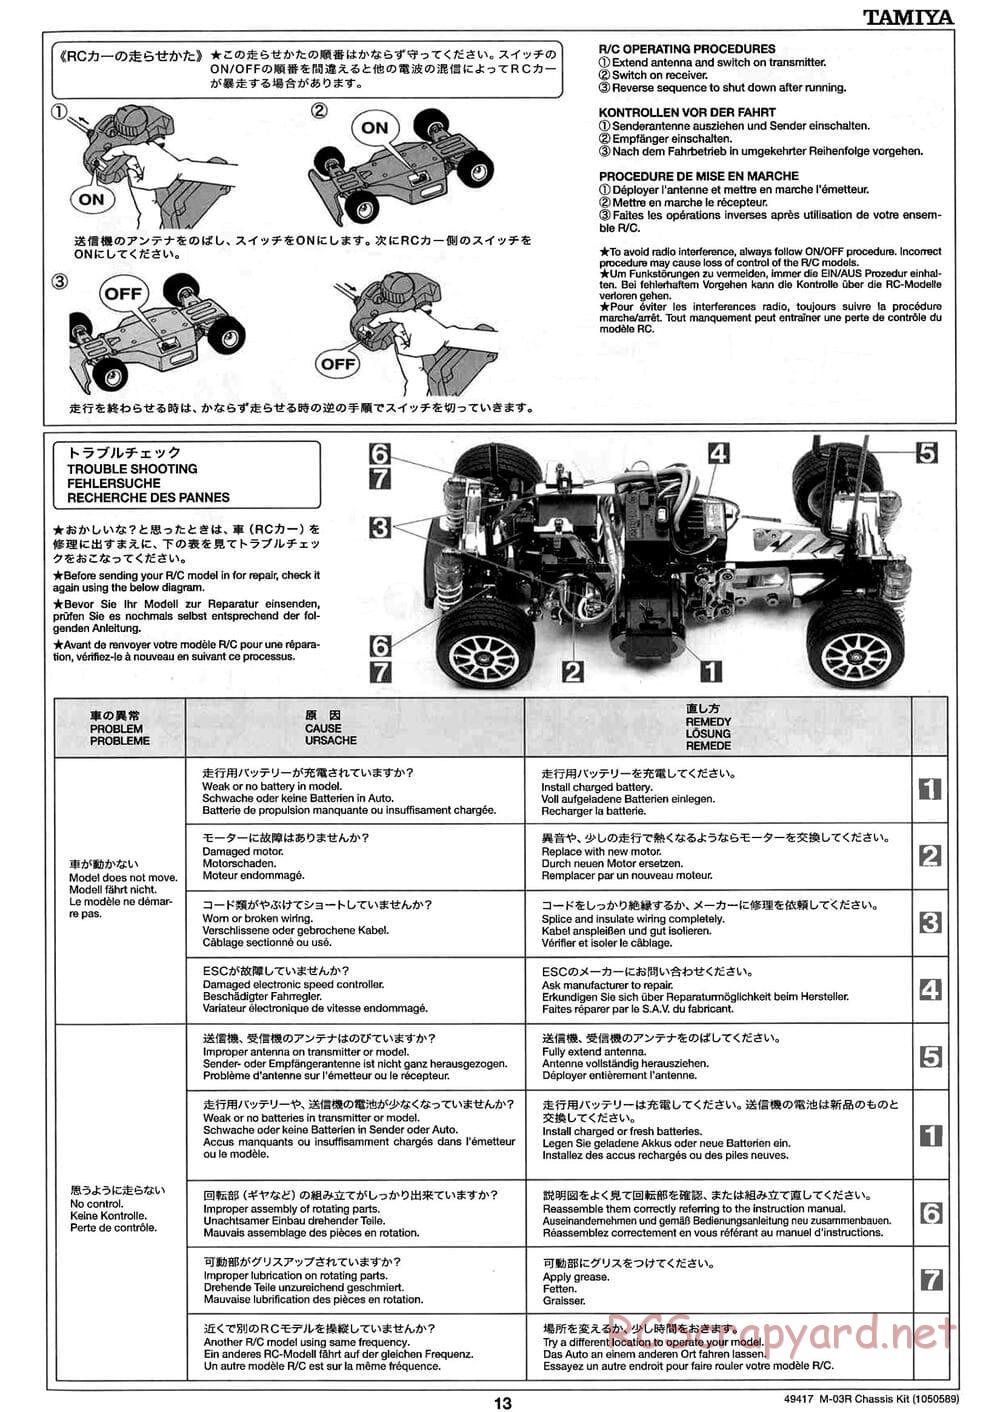 Tamiya - M-03R Chassis - Manual - Page 13